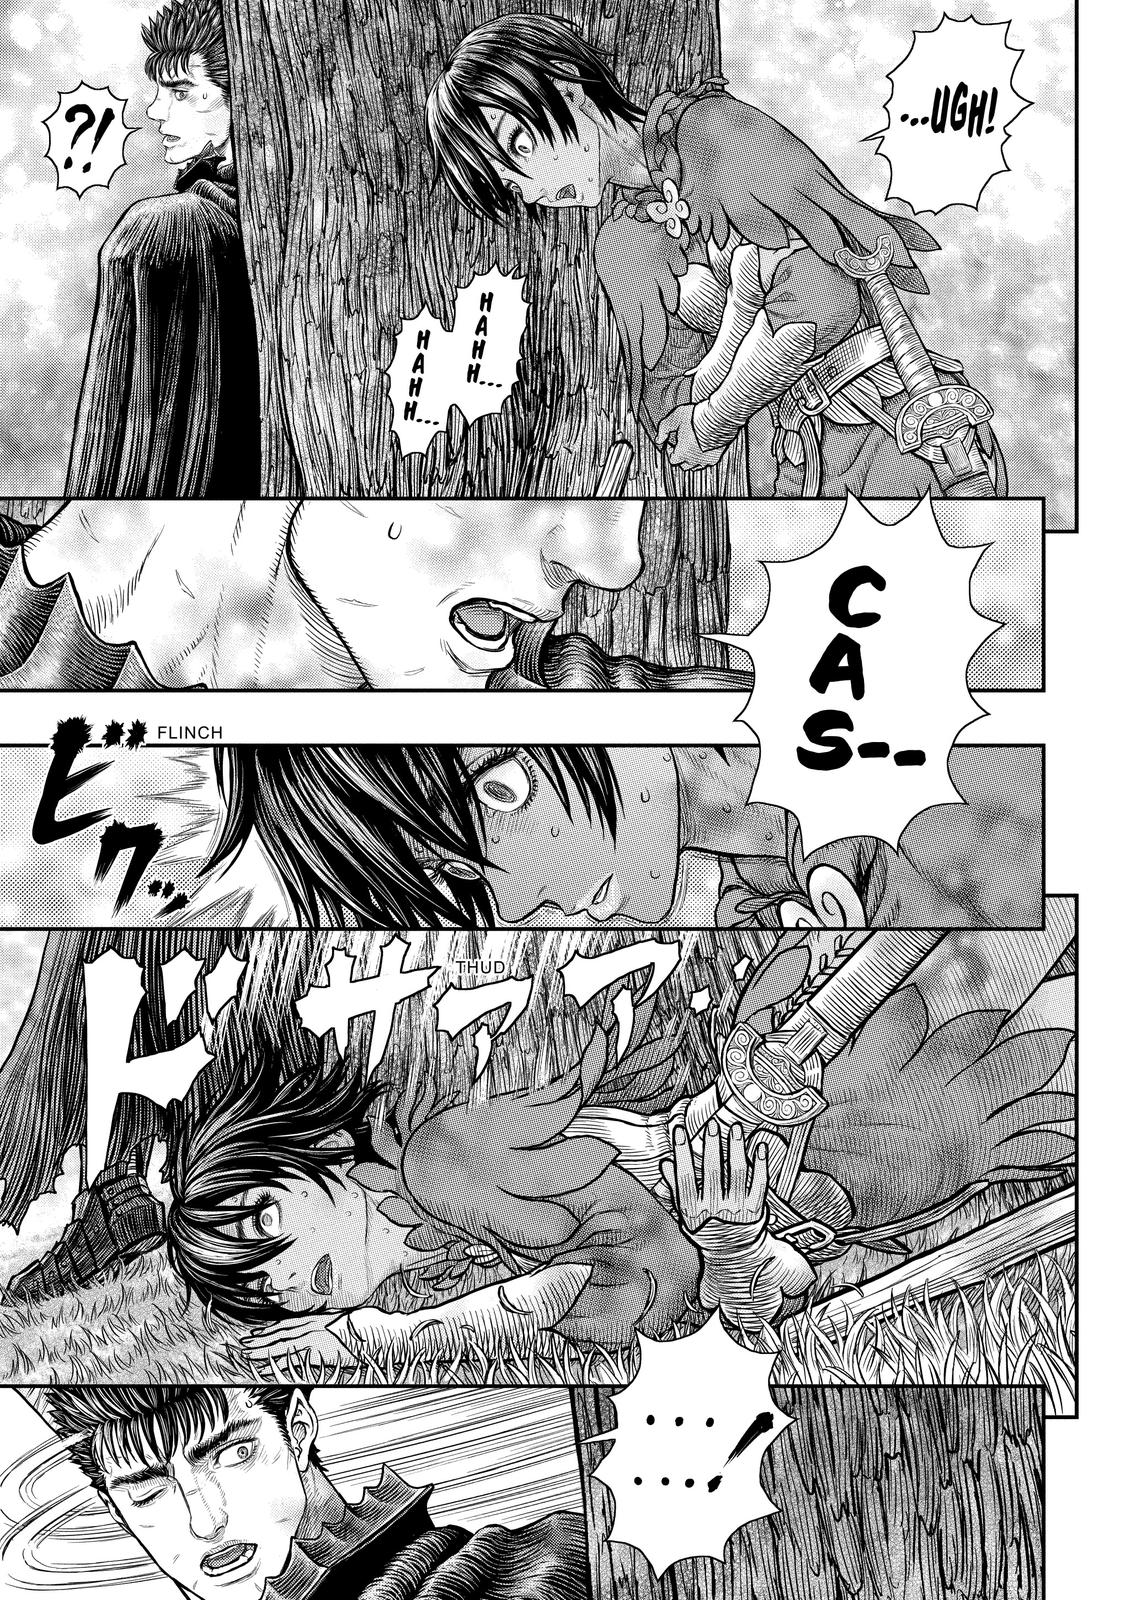 Berserk Manga Chapter 359 image 19